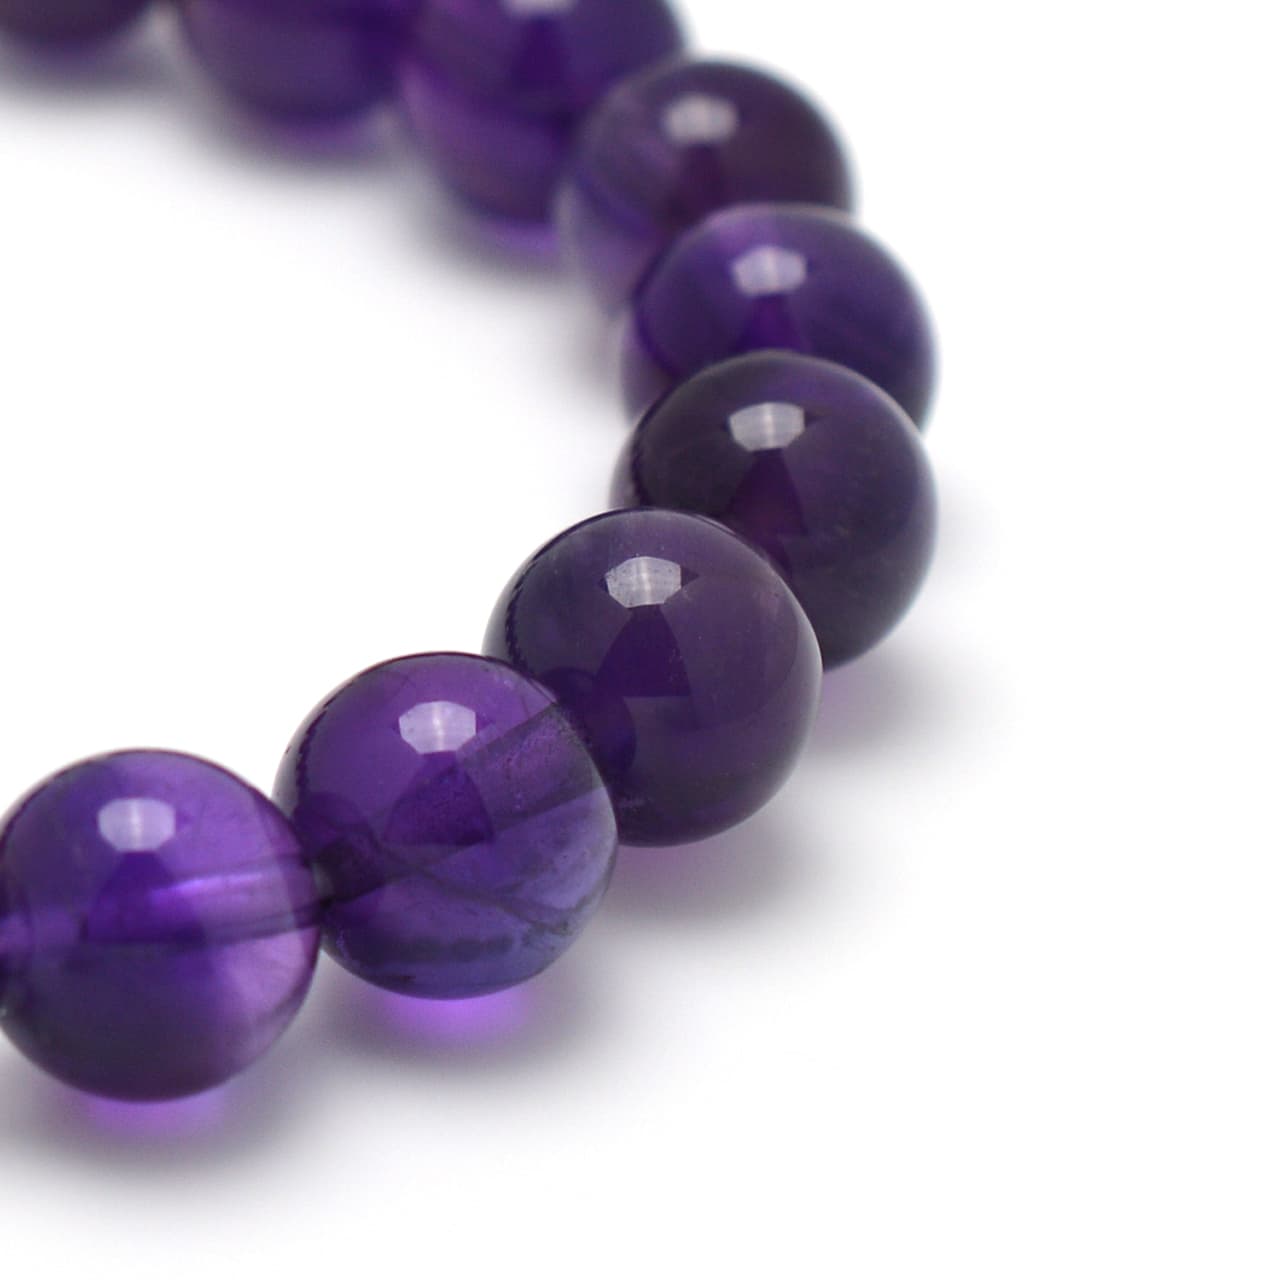 アメジスト(紫水晶)、バイカラーフローライト、カット水晶 - 8mm玉、サイズ15cm | 天然石ブレスレットのご購入 | パワーストーン ショップ彌吉(ヤキチ)